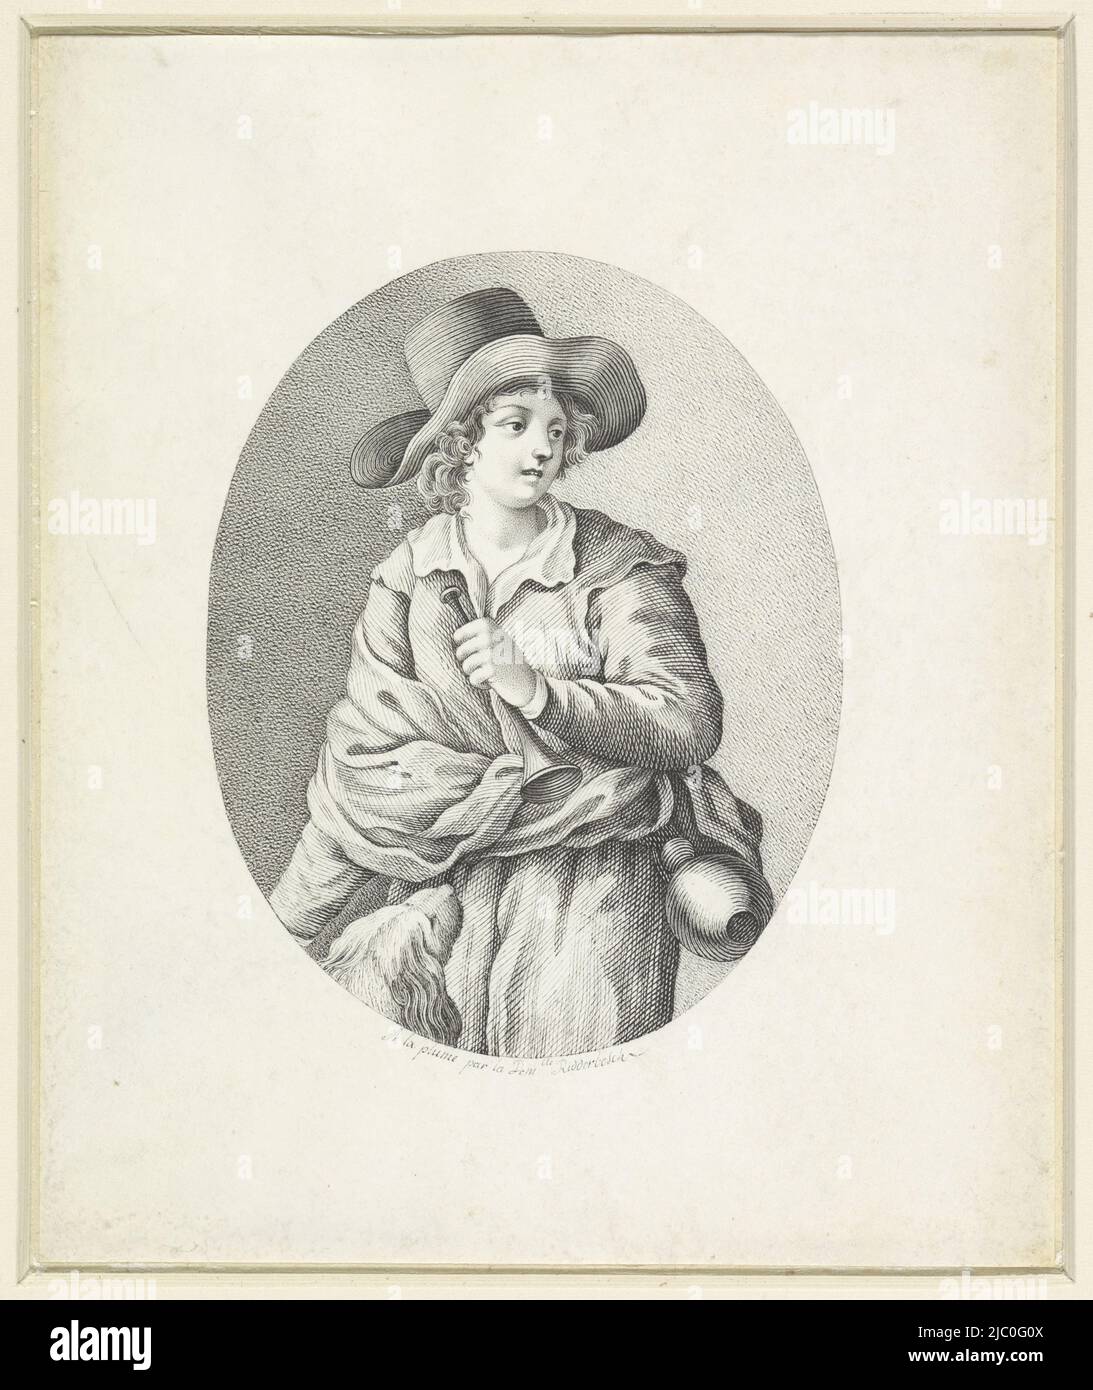 Hirte mit Hund im Oval, Zeichner: Françoise Jeanne Ridderbosch, 1764 - 1837, Pergament (tierisches Material), Stift, H 162 mm × B 133 mm Stockfoto